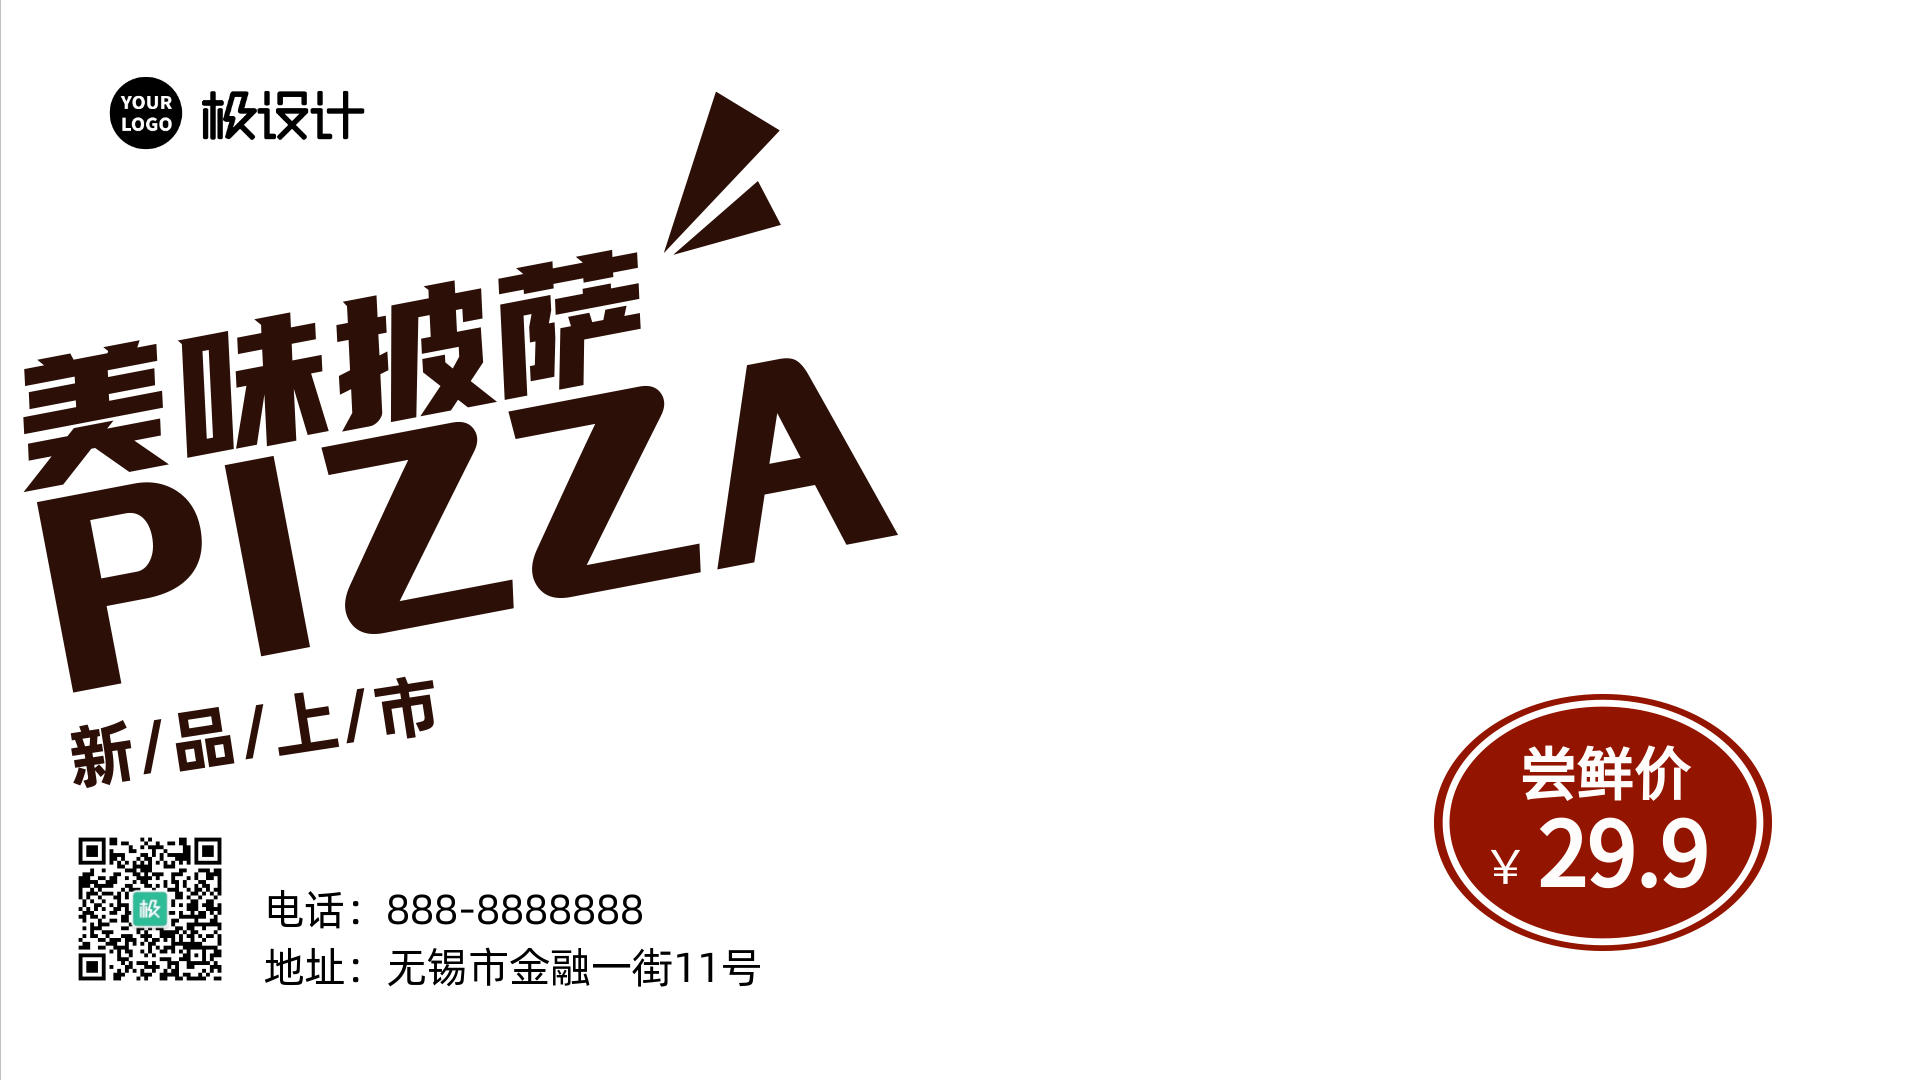 西餐快餐小吃美味披萨新品宣传启屏海报-横